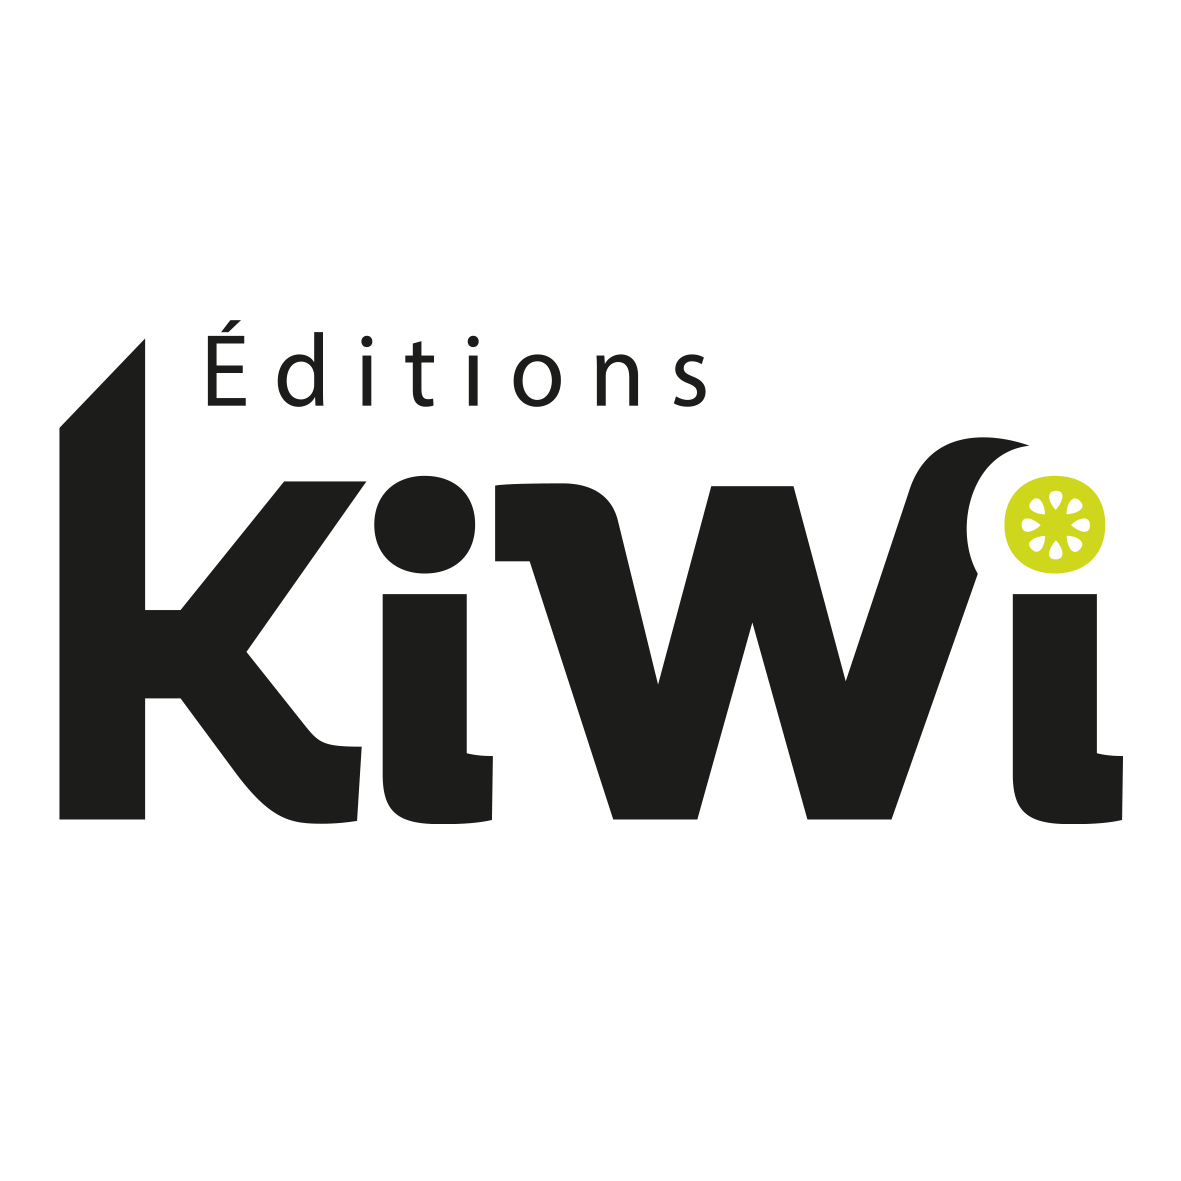 De trois personnes au lancement de Kiwi, l'équipe est maintenant constitué d'une quinzaine de personnes. ©DR